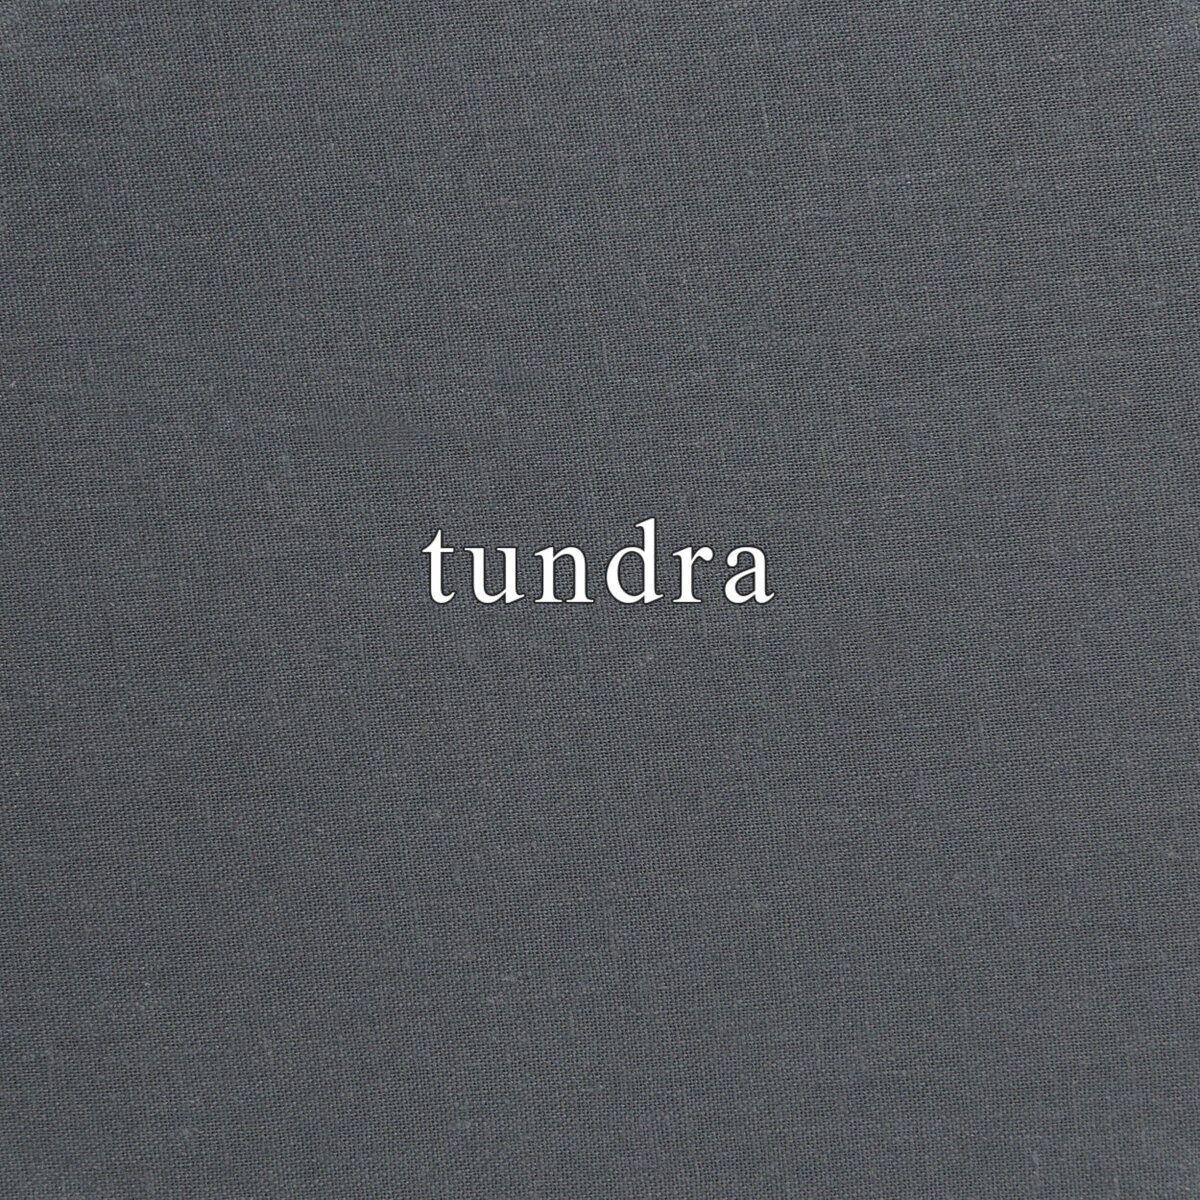 tundra